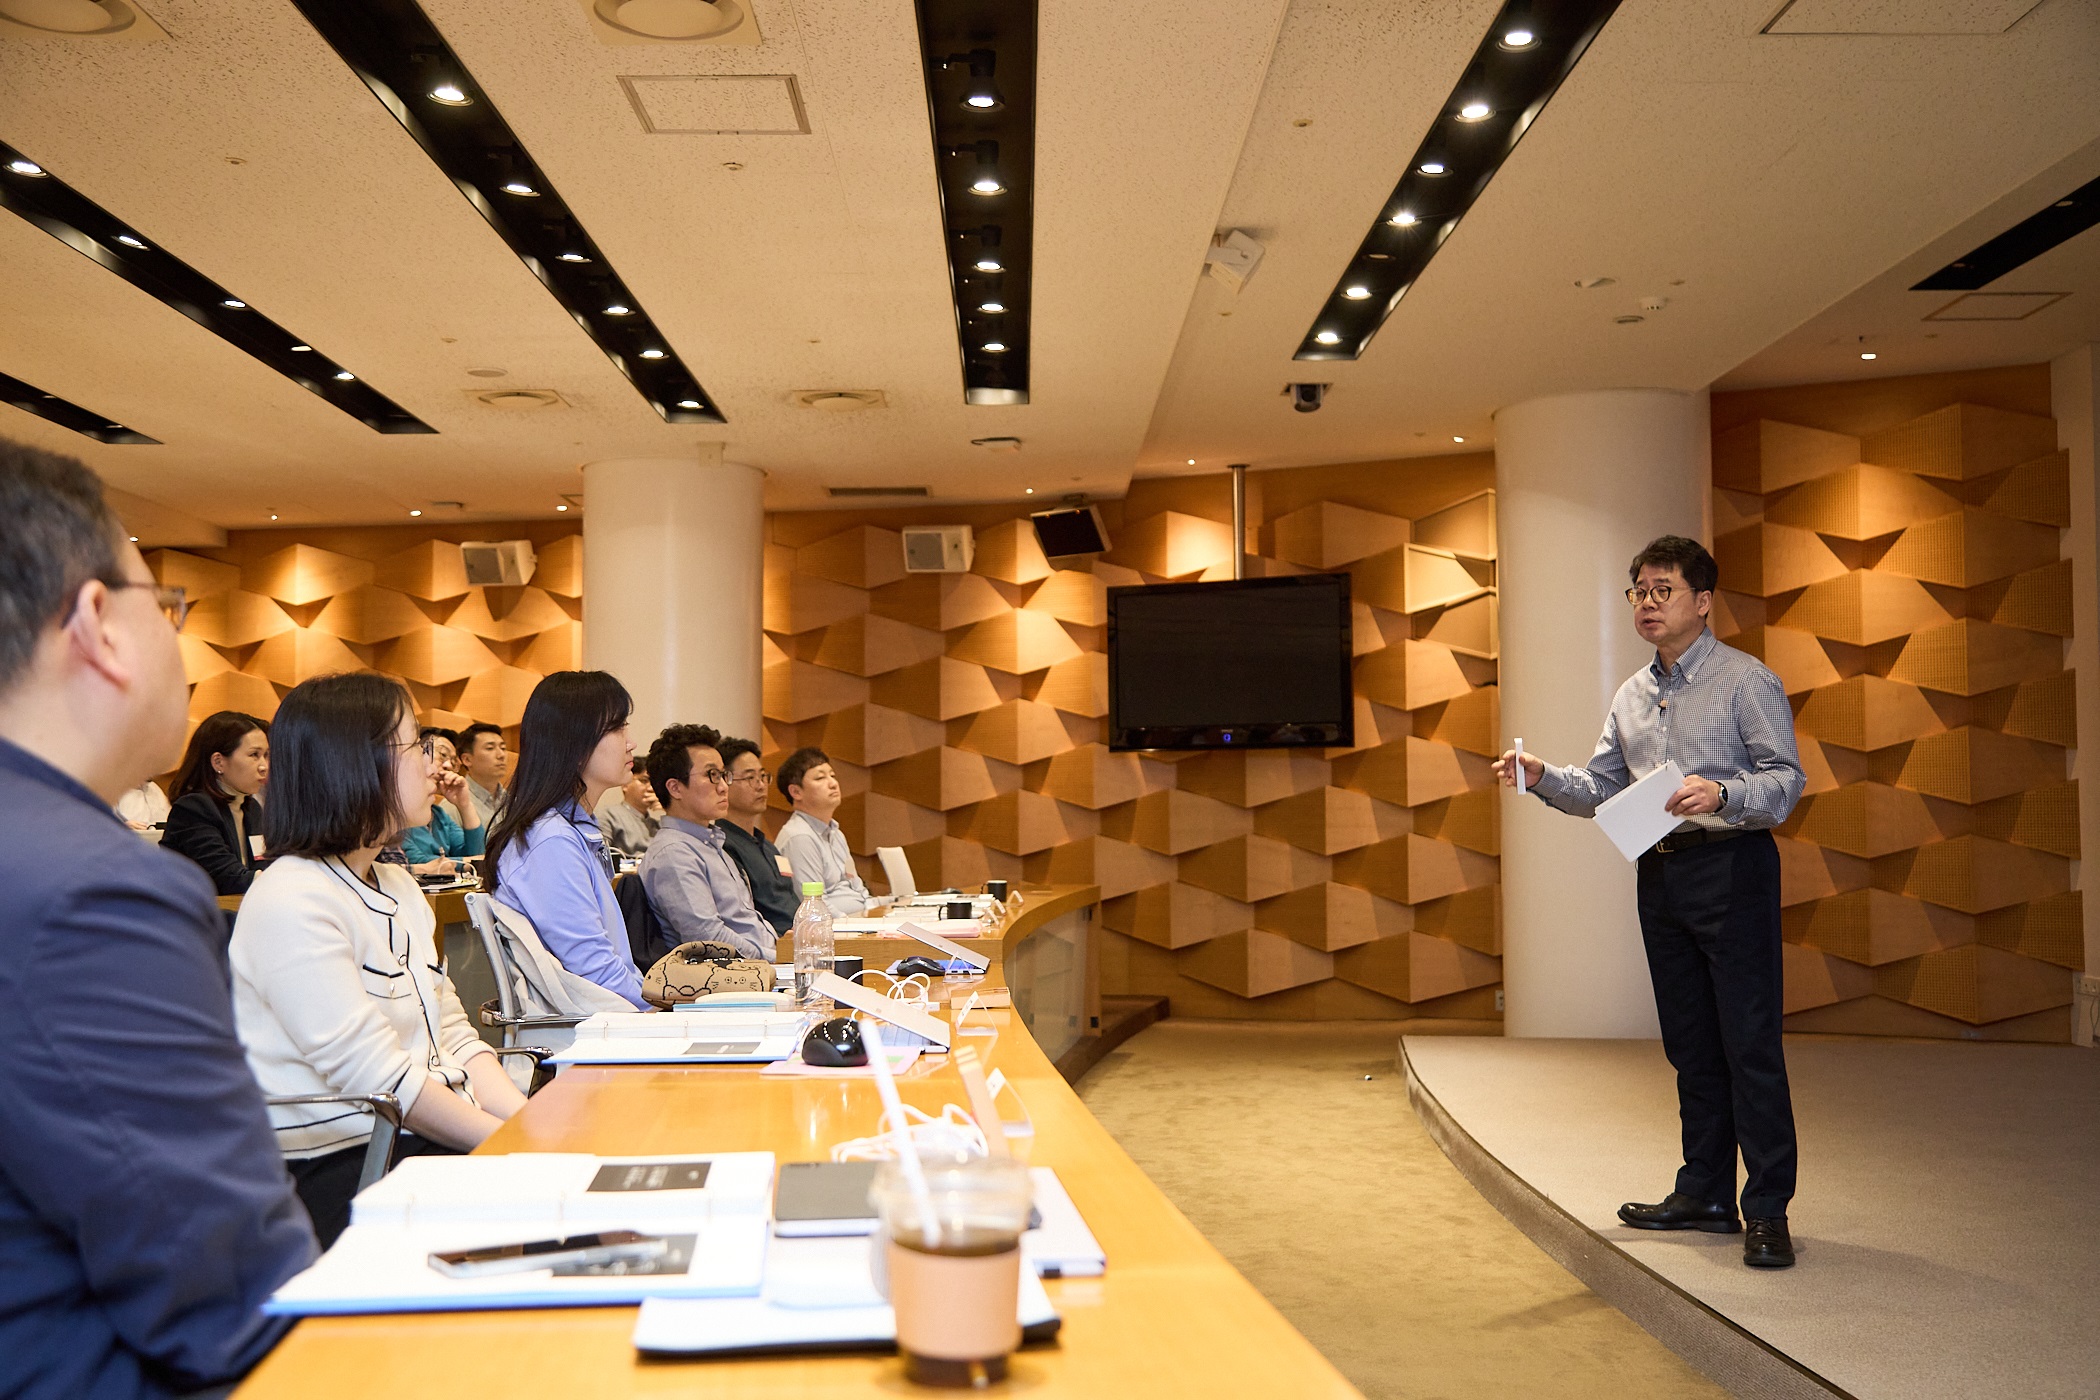 박 사장이 지난 12일 서울 광진구 워커힐호텔에서 열린 PL(Professional Leader) 워크숍에 참여해 강연하고 있는 모습.